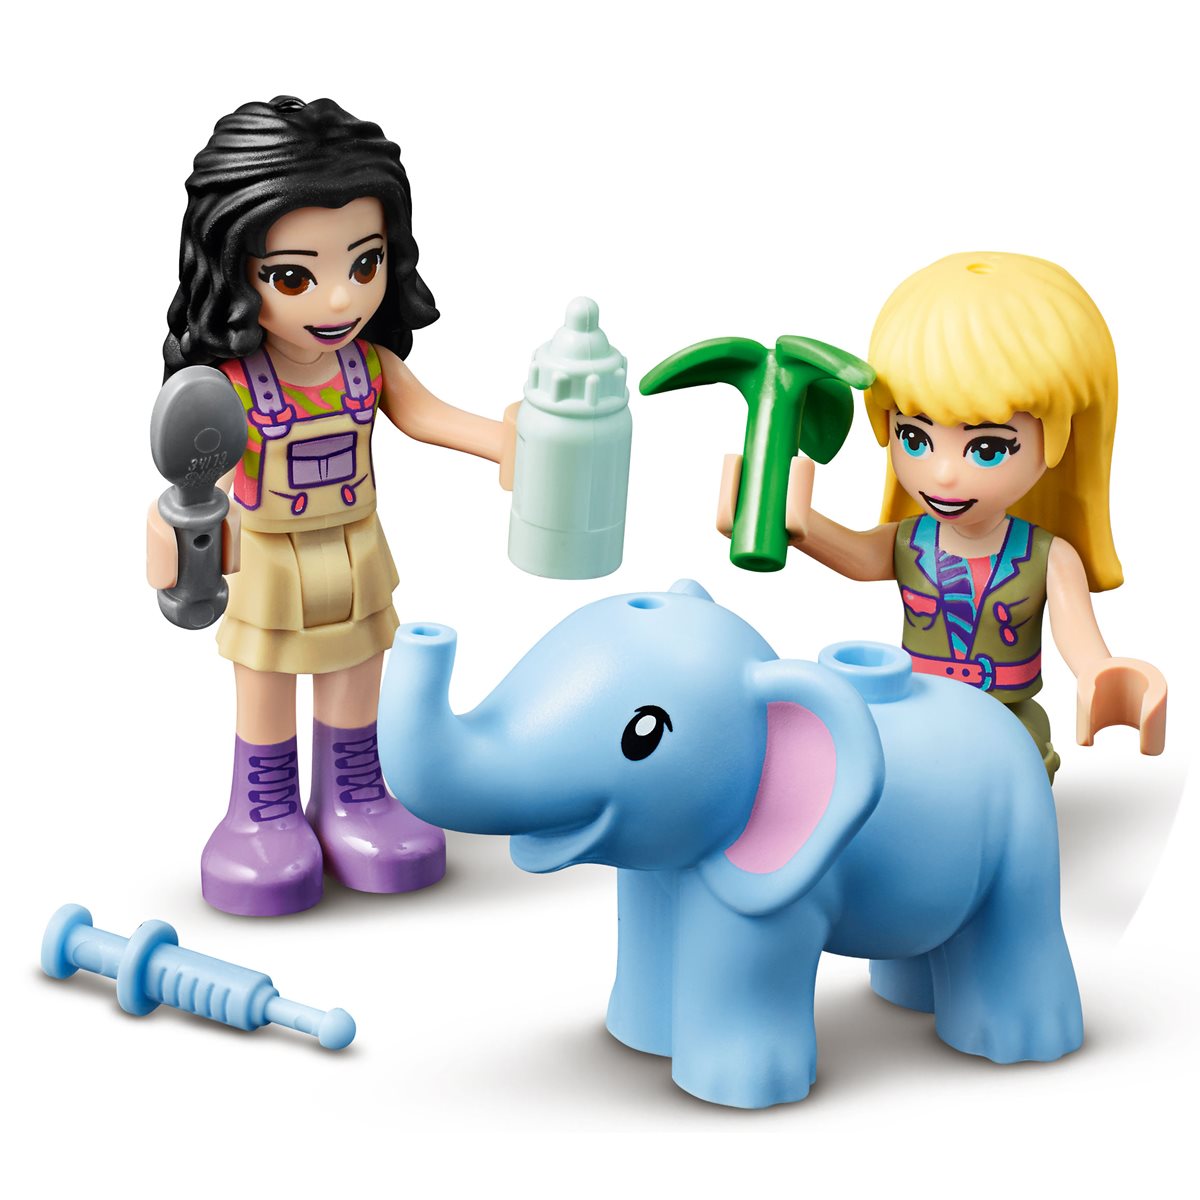 nb31 Lego Friends blau Baby Elefant